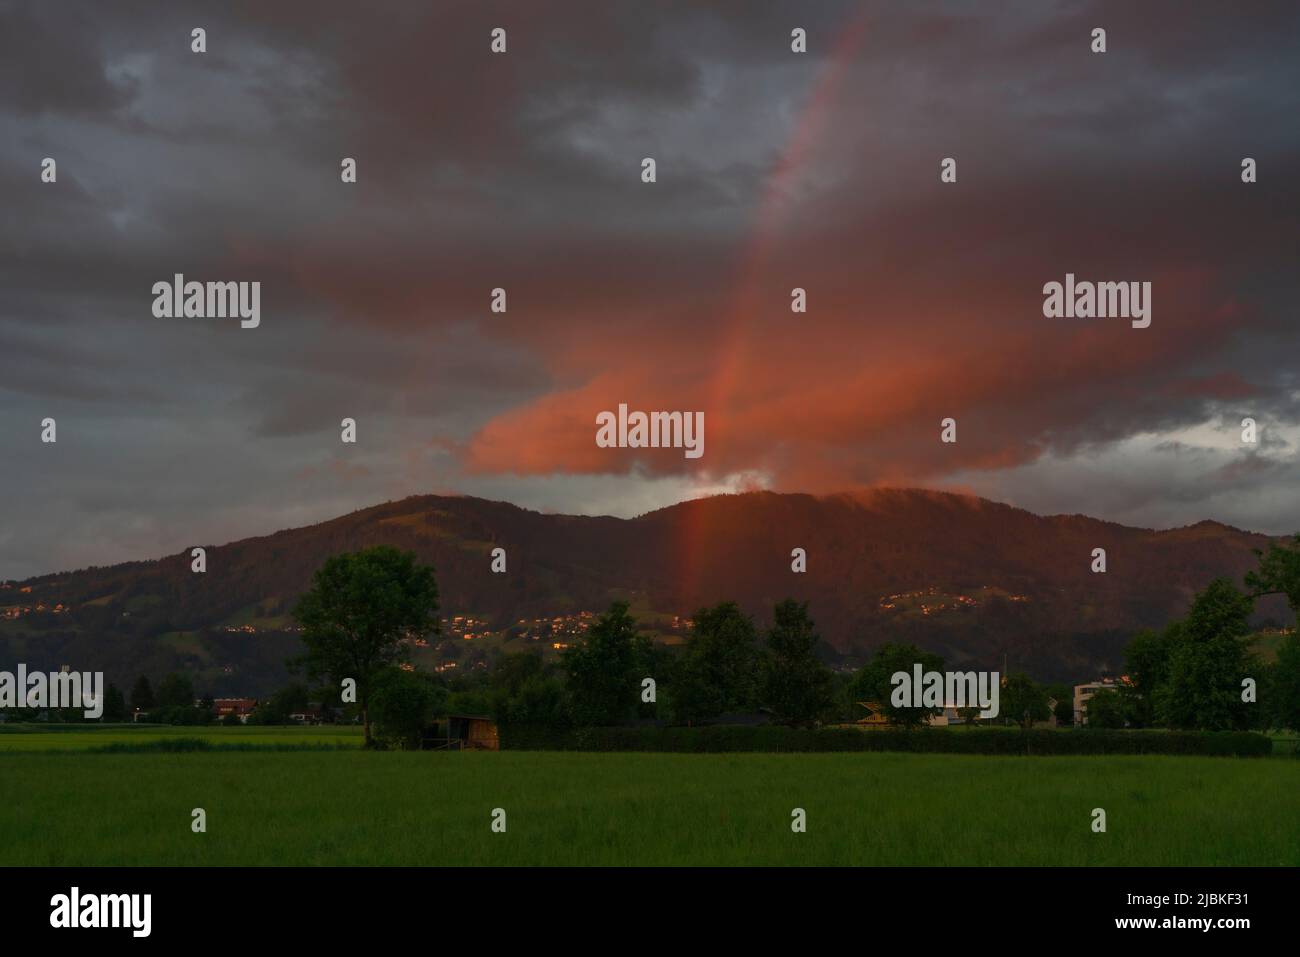 leuchtendes Abendrot mit Regenbogen nach dem Sonnenuntergang in Dornbirn, Vorarlberg, Austria. rote und graublaue Wolken über den grünen Wiesen Stock Photo